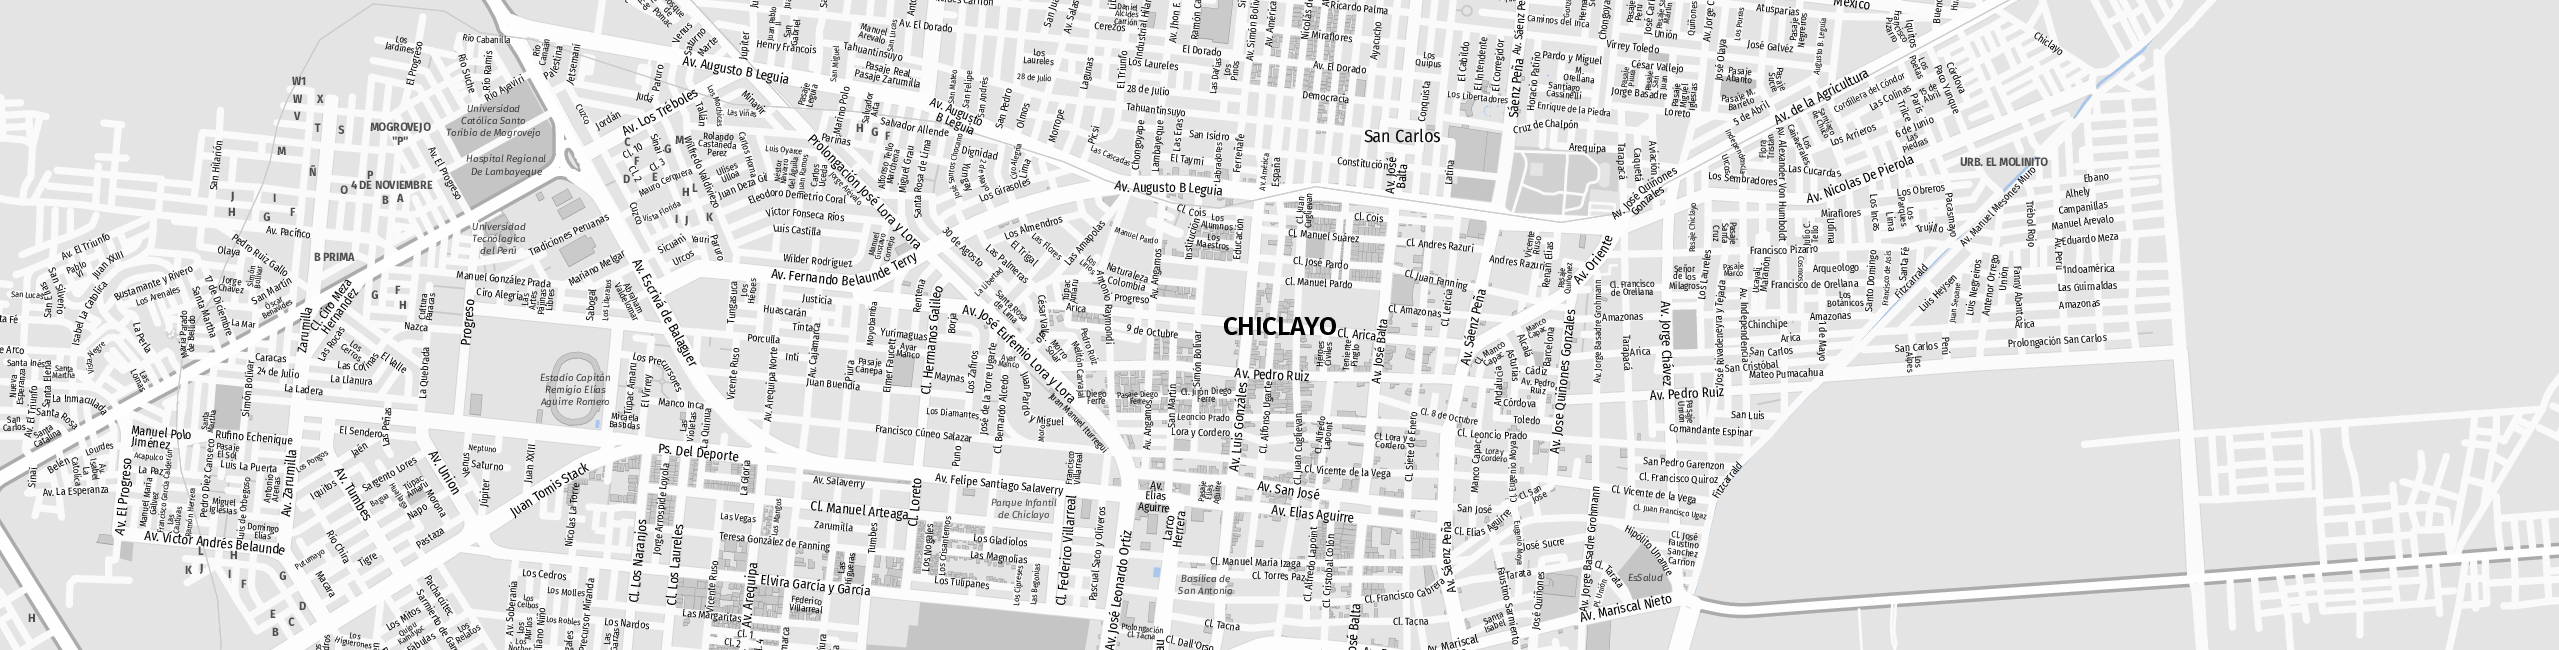 Stadtplan Chiclayo zum Downloaden.